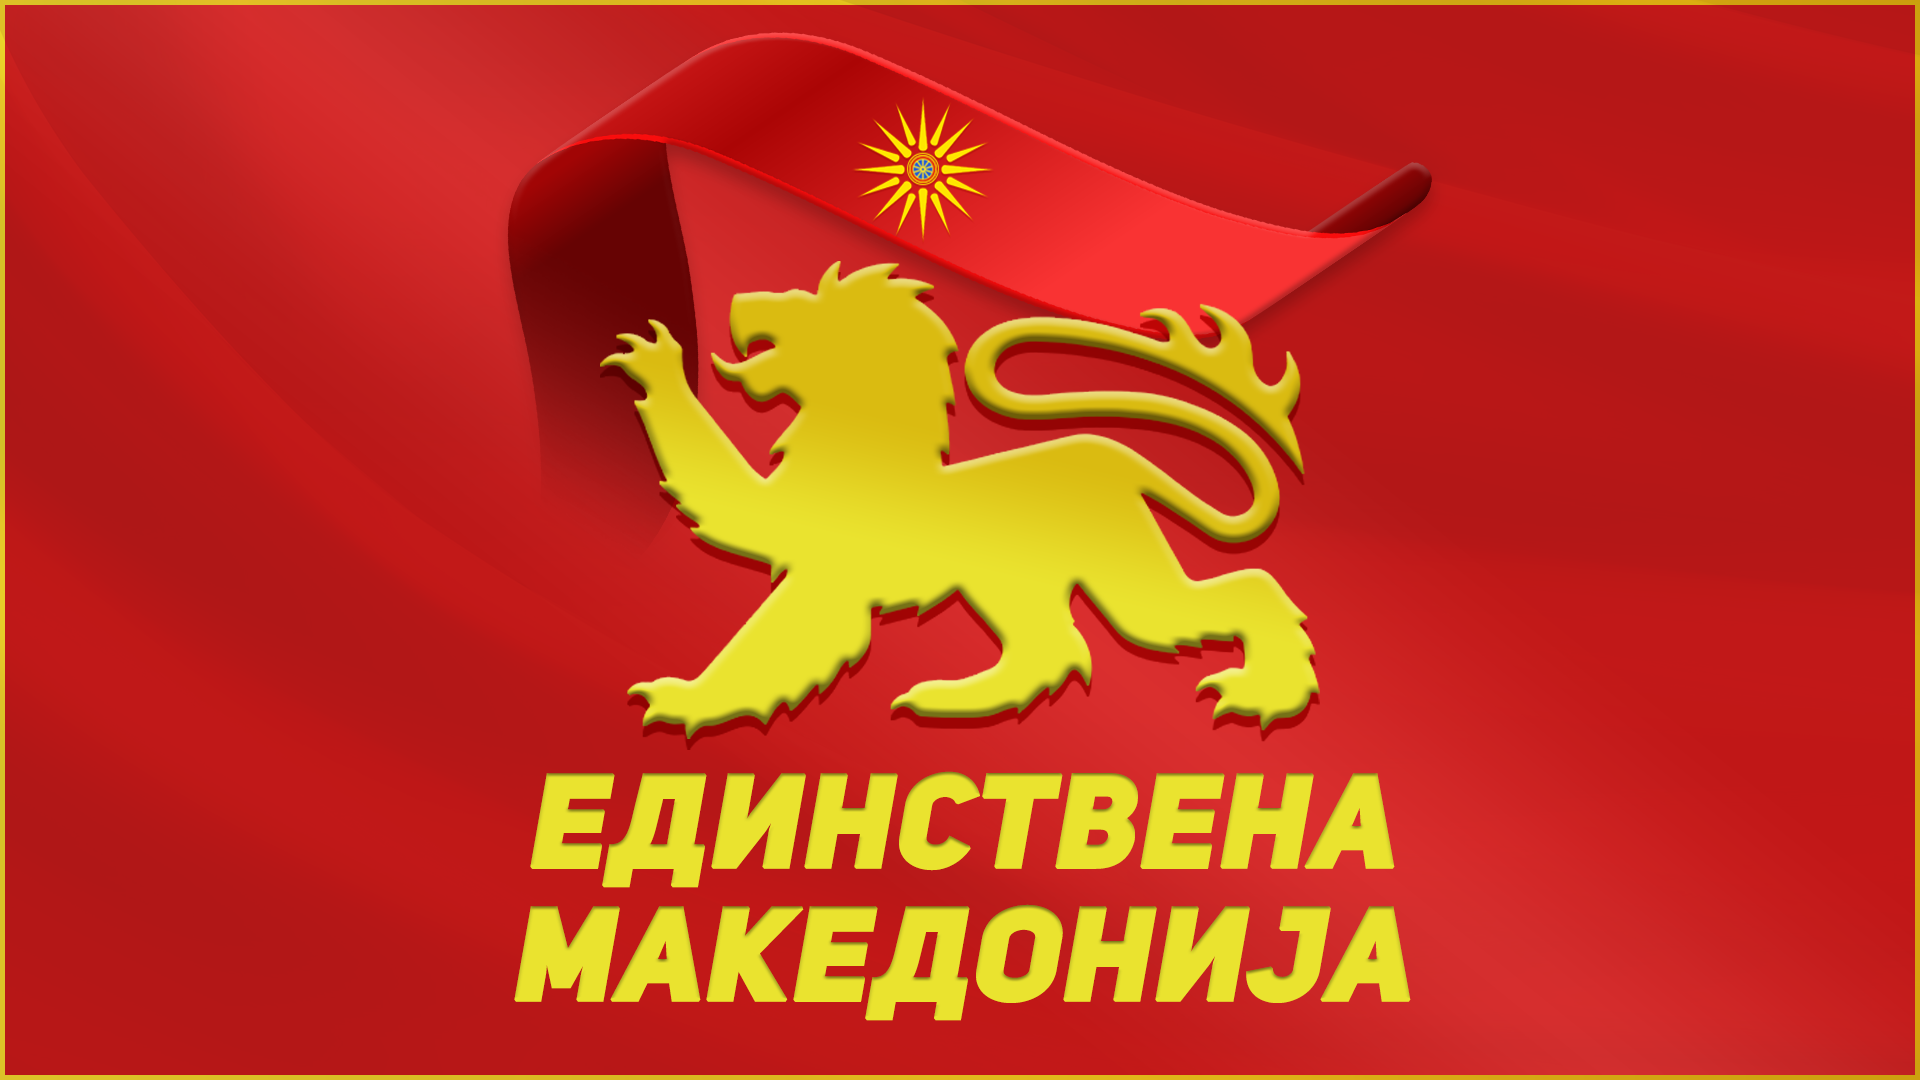 Единствена Македонија: Со примена на странски „црни листи“ Македонија станува вазална држава спротивно на Уставот и Повелбата на ОН 